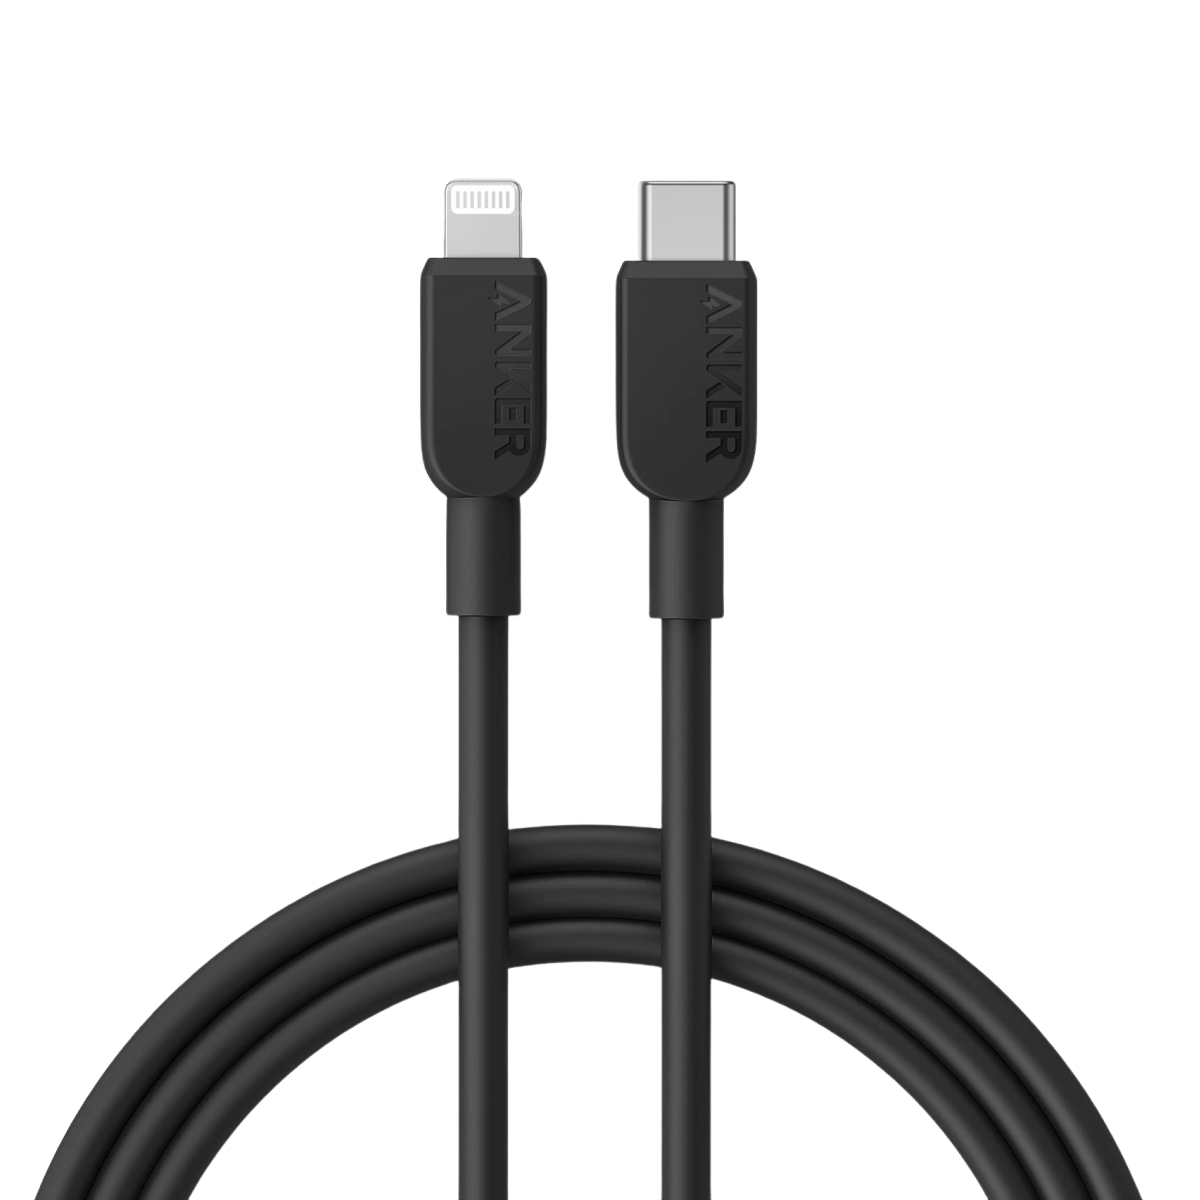 Anker <b>310</b> USB-C to Lightning Cable (3 ft / 6 ft / 10 ft)